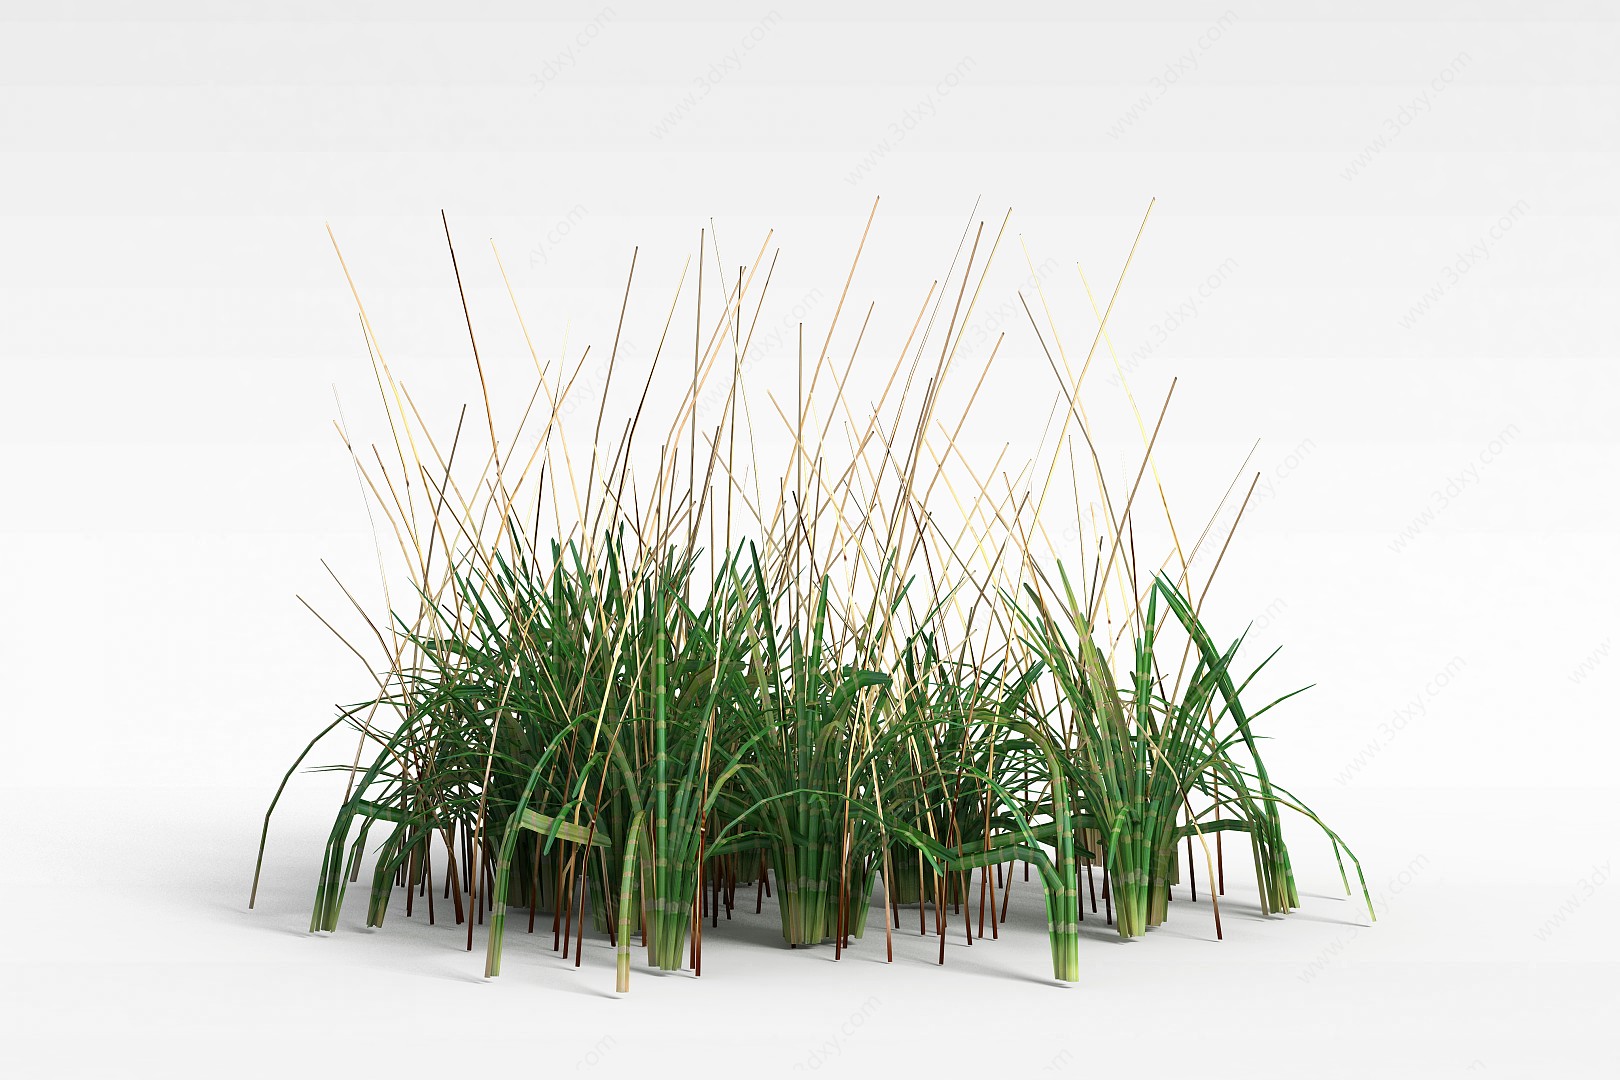 绿色草丛3D模型